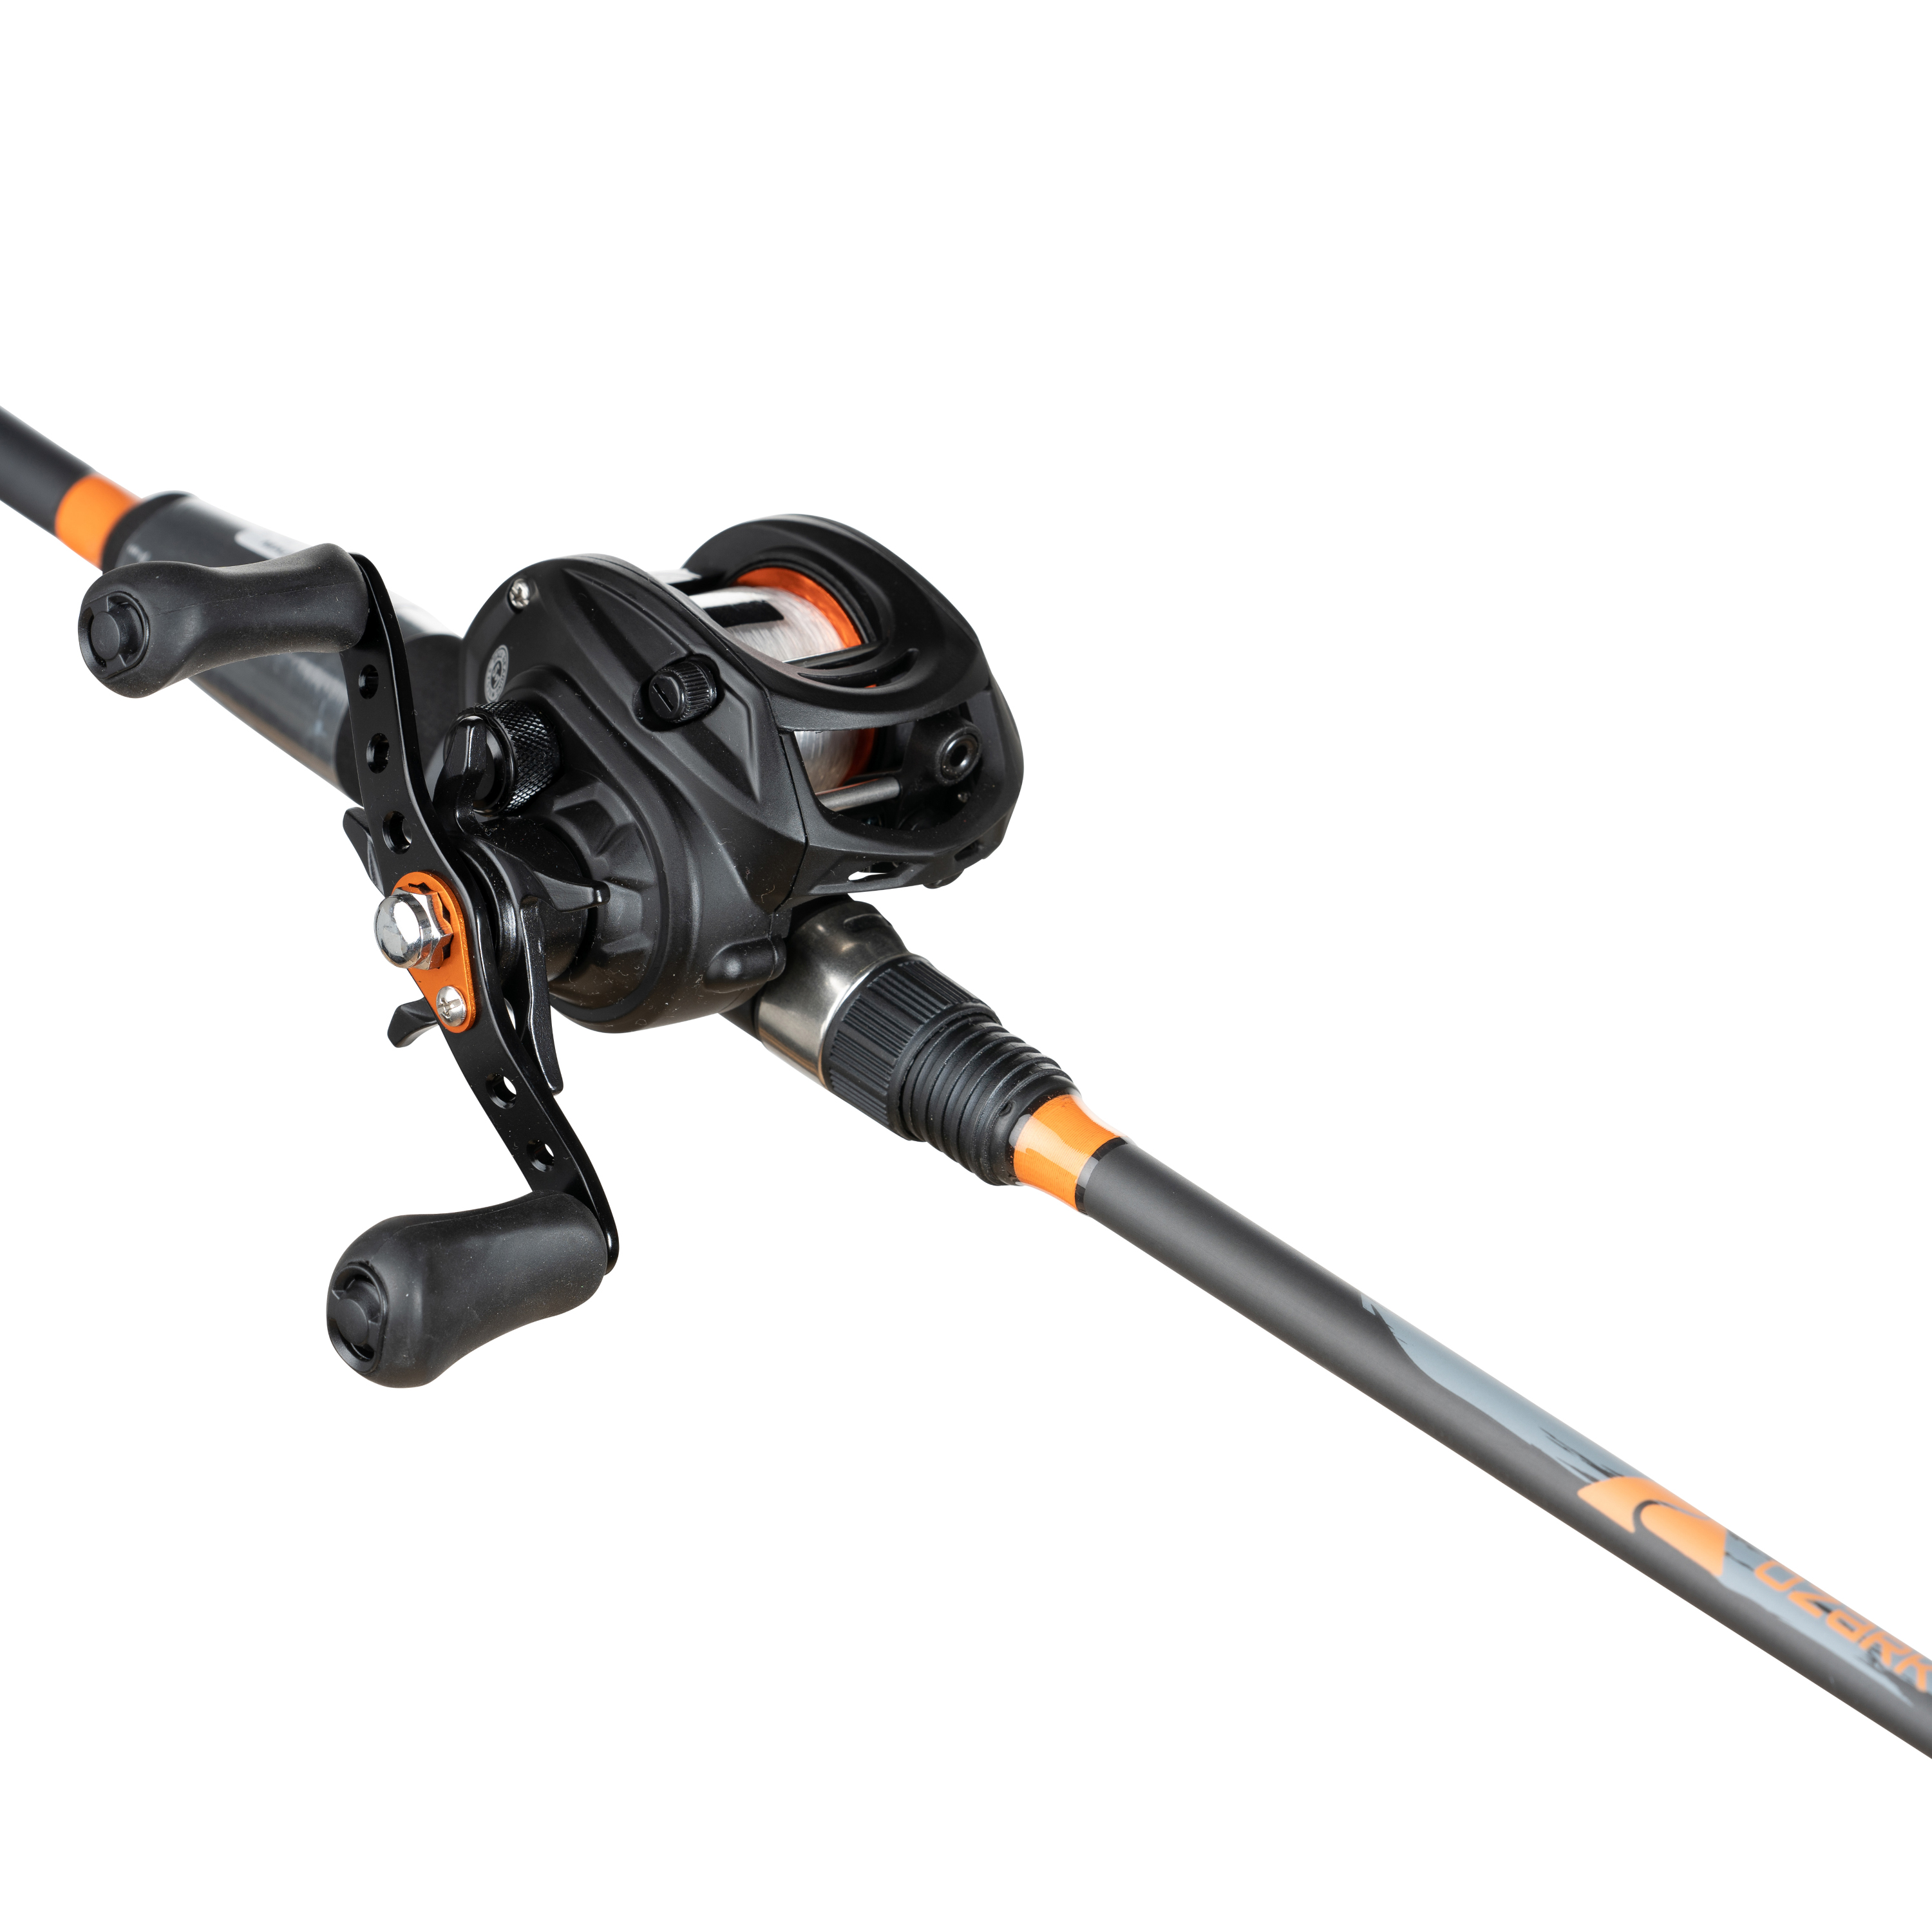 Ozark Trail Baitcast Rod & Reel Fishing Combo, Medium Action, 6.5ft - Black and Orange - image 1 of 7